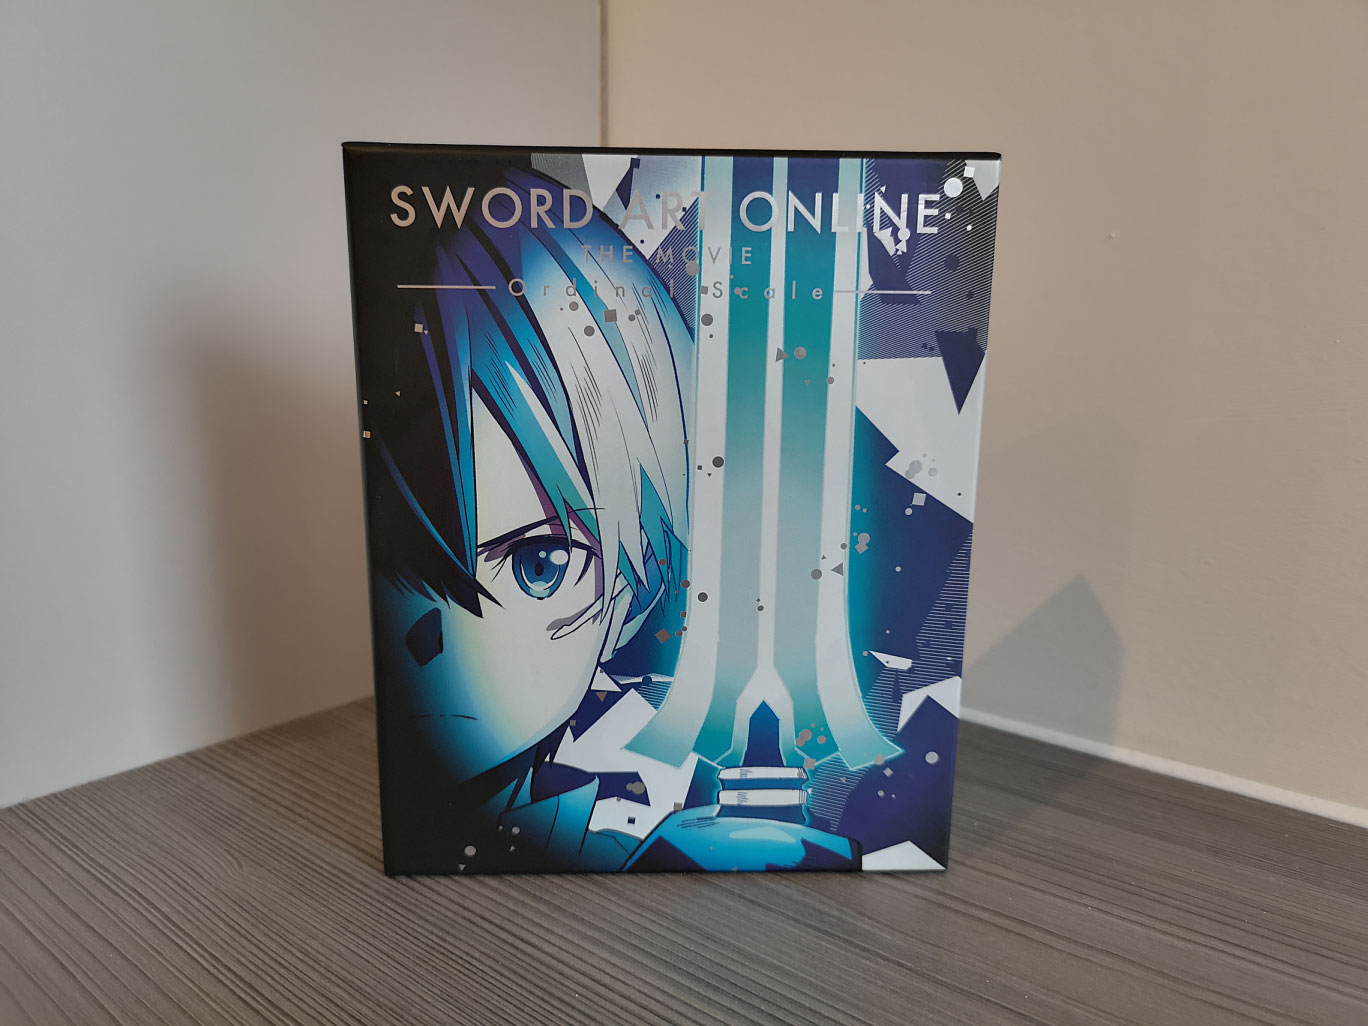 Sword Art Online: Sword Art Offline - Extra Edition 